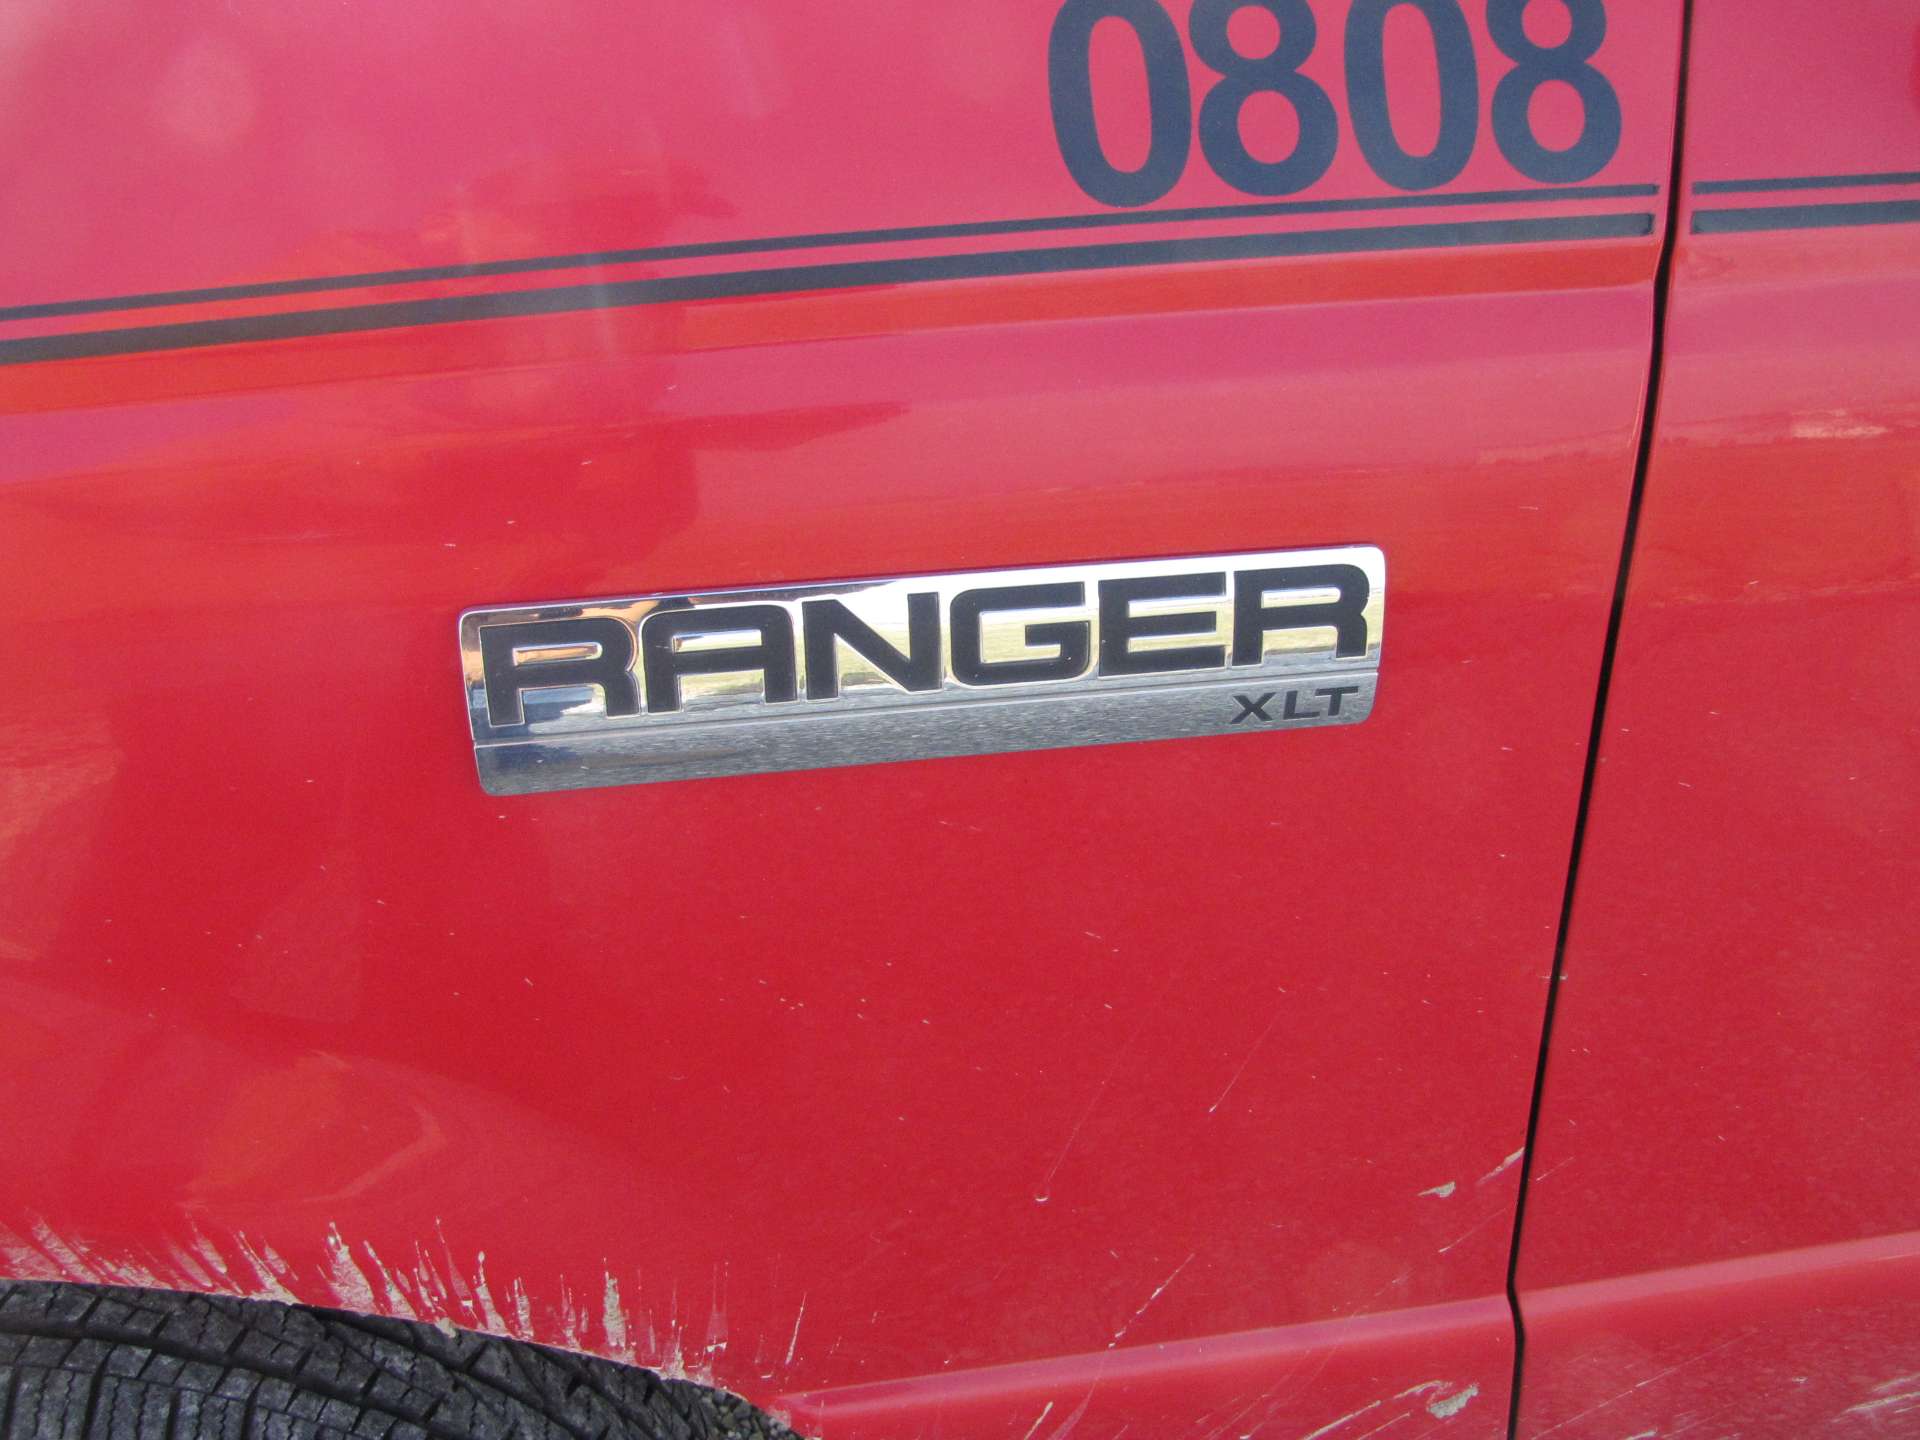 2008 Ford Ranger XLT pickup truck - Image 41 of 57